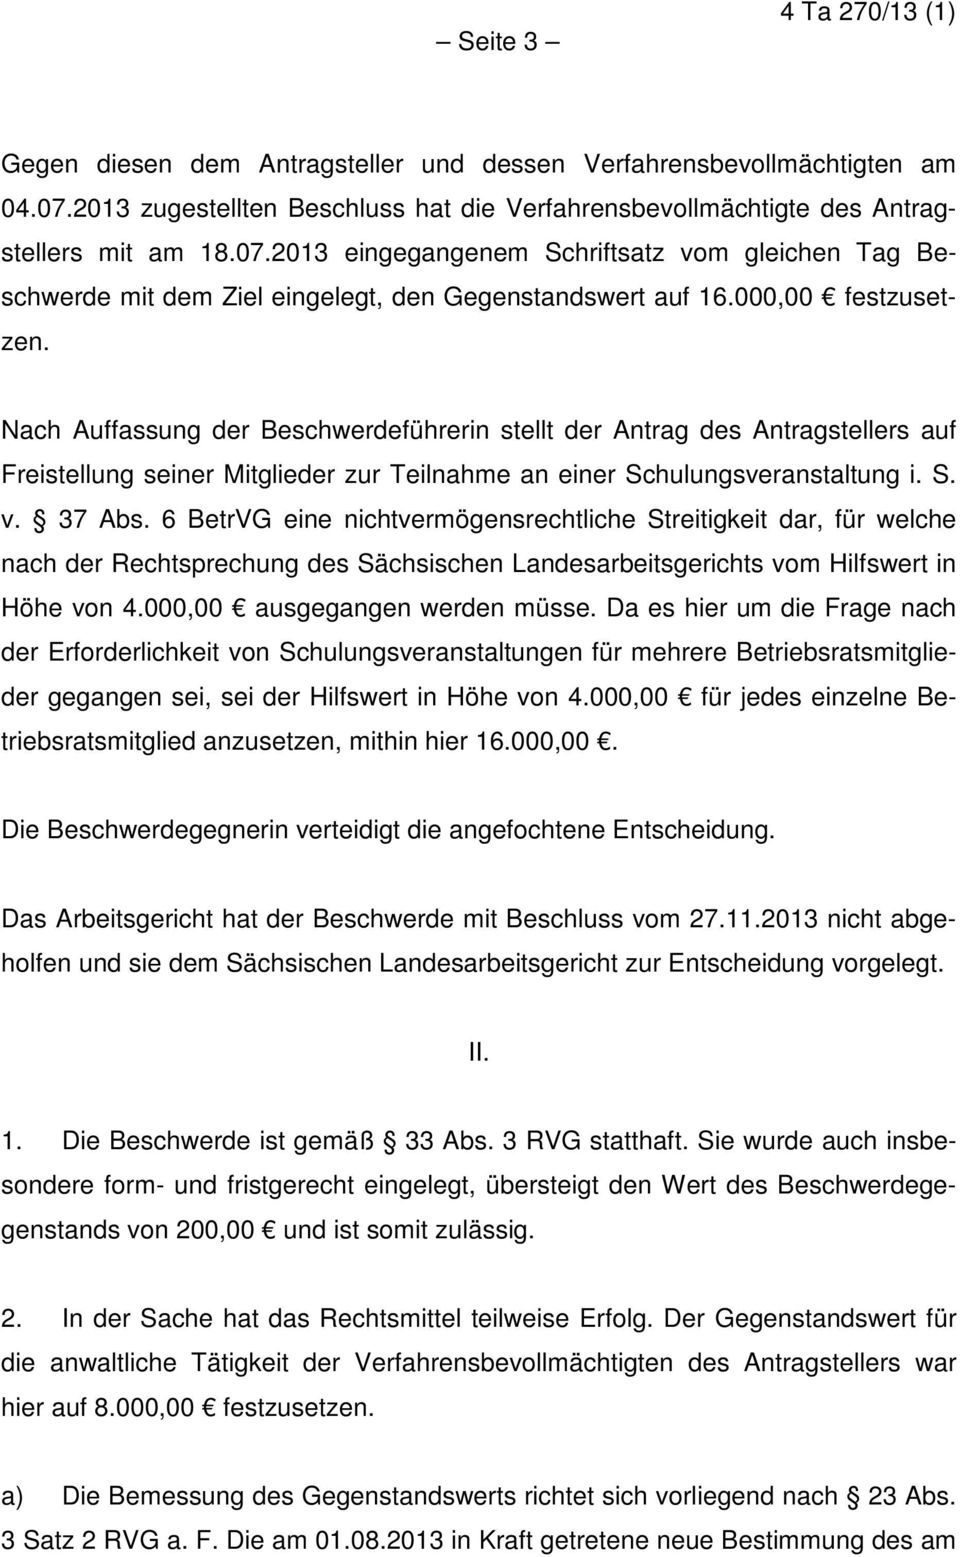 6 BetrVG eine nichtvermögensrechtliche Streitigkeit dar, für welche nach der Rechtsprechung des Sächsischen Landesarbeitsgerichts vom Hilfswert in Höhe von 4.000,00 ausgegangen werden müsse.